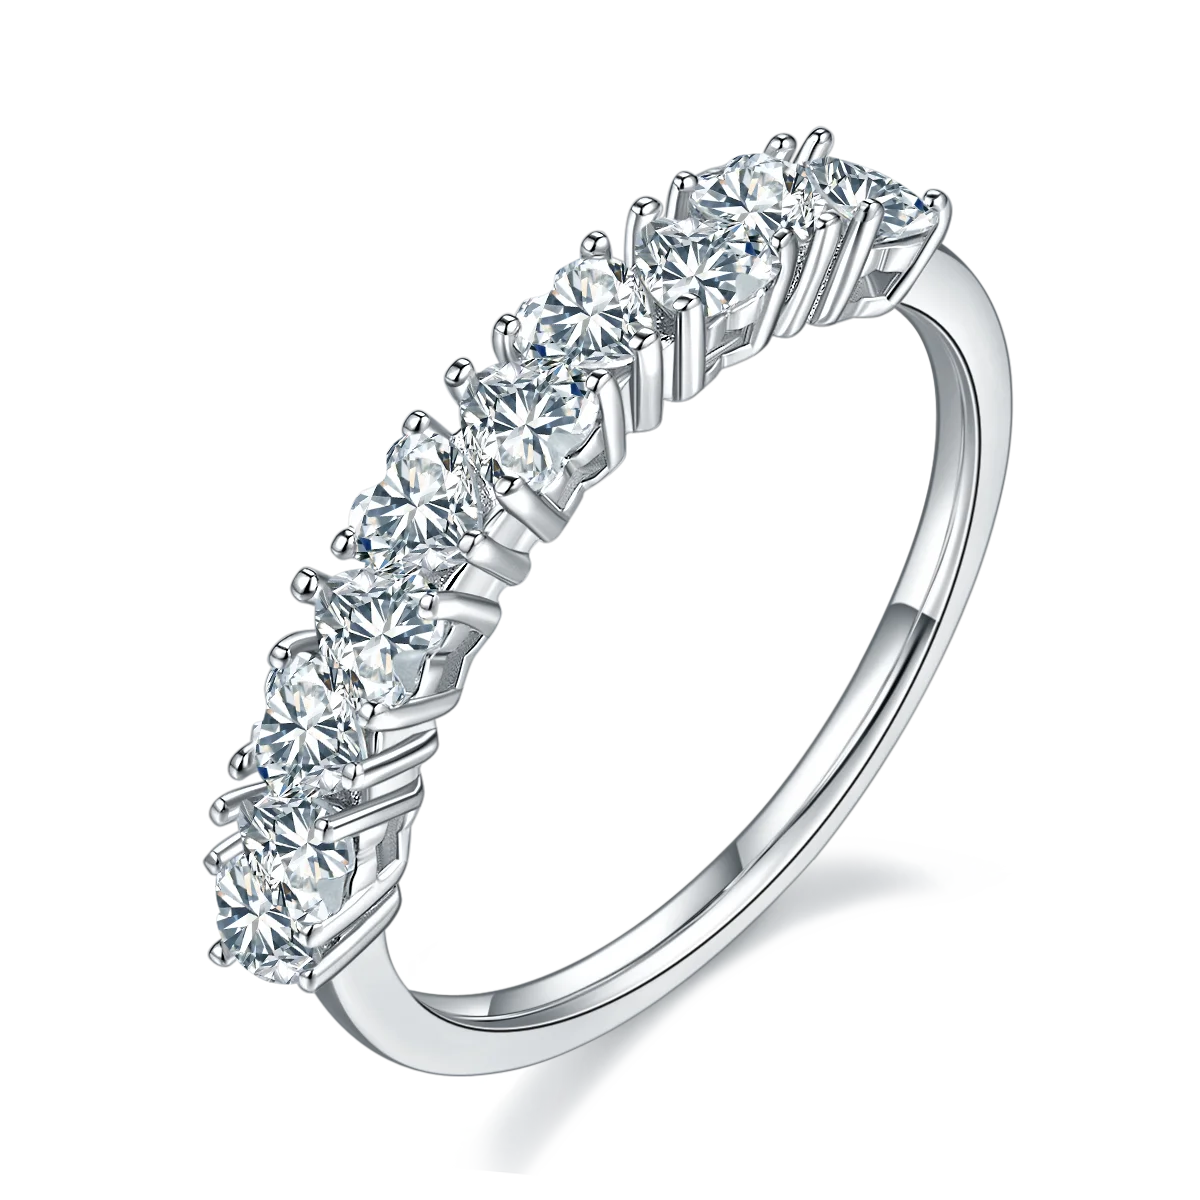 GEM'S BALLET 18K White Gold Plated 925 Sterling Silver Moissanite Ring Luxe Anthology Moissanite Diamond Wedding Band Rings 925 Sterling Silver Heart Shape